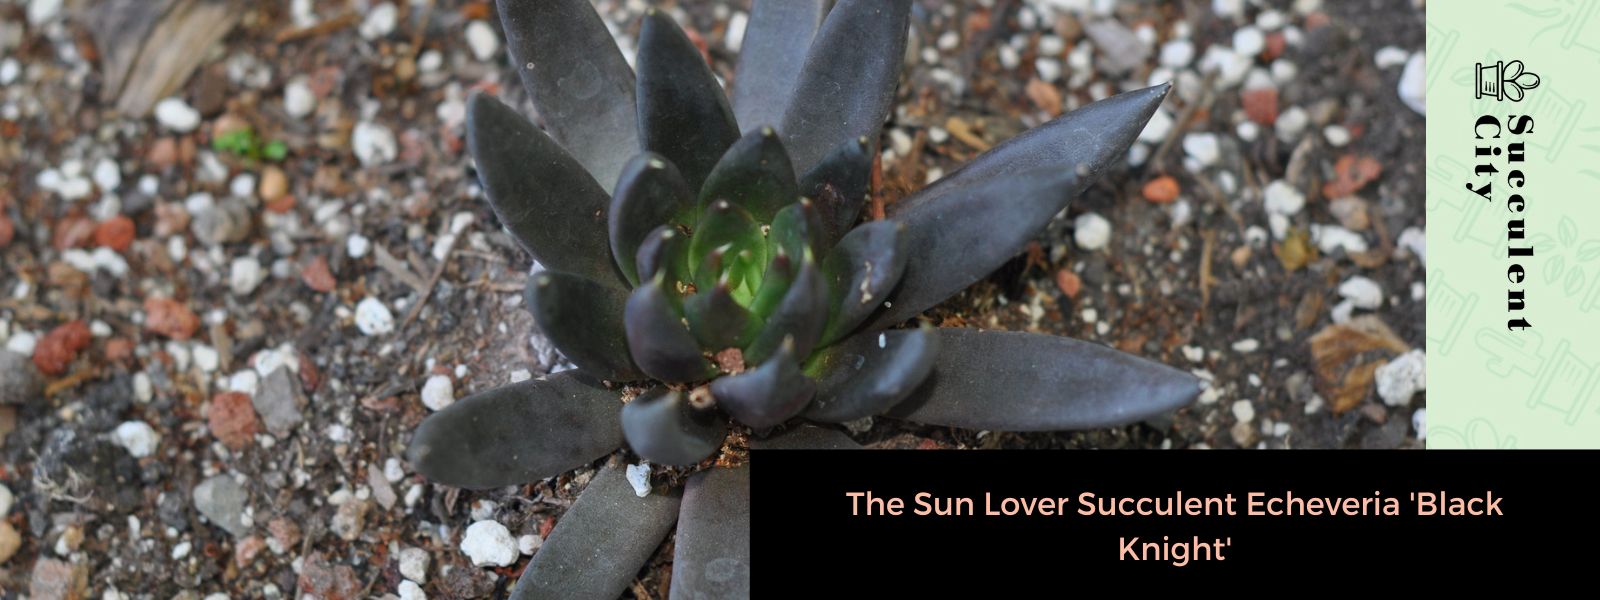 La suculenta Echeveria "Caballero Negro" amante del sol